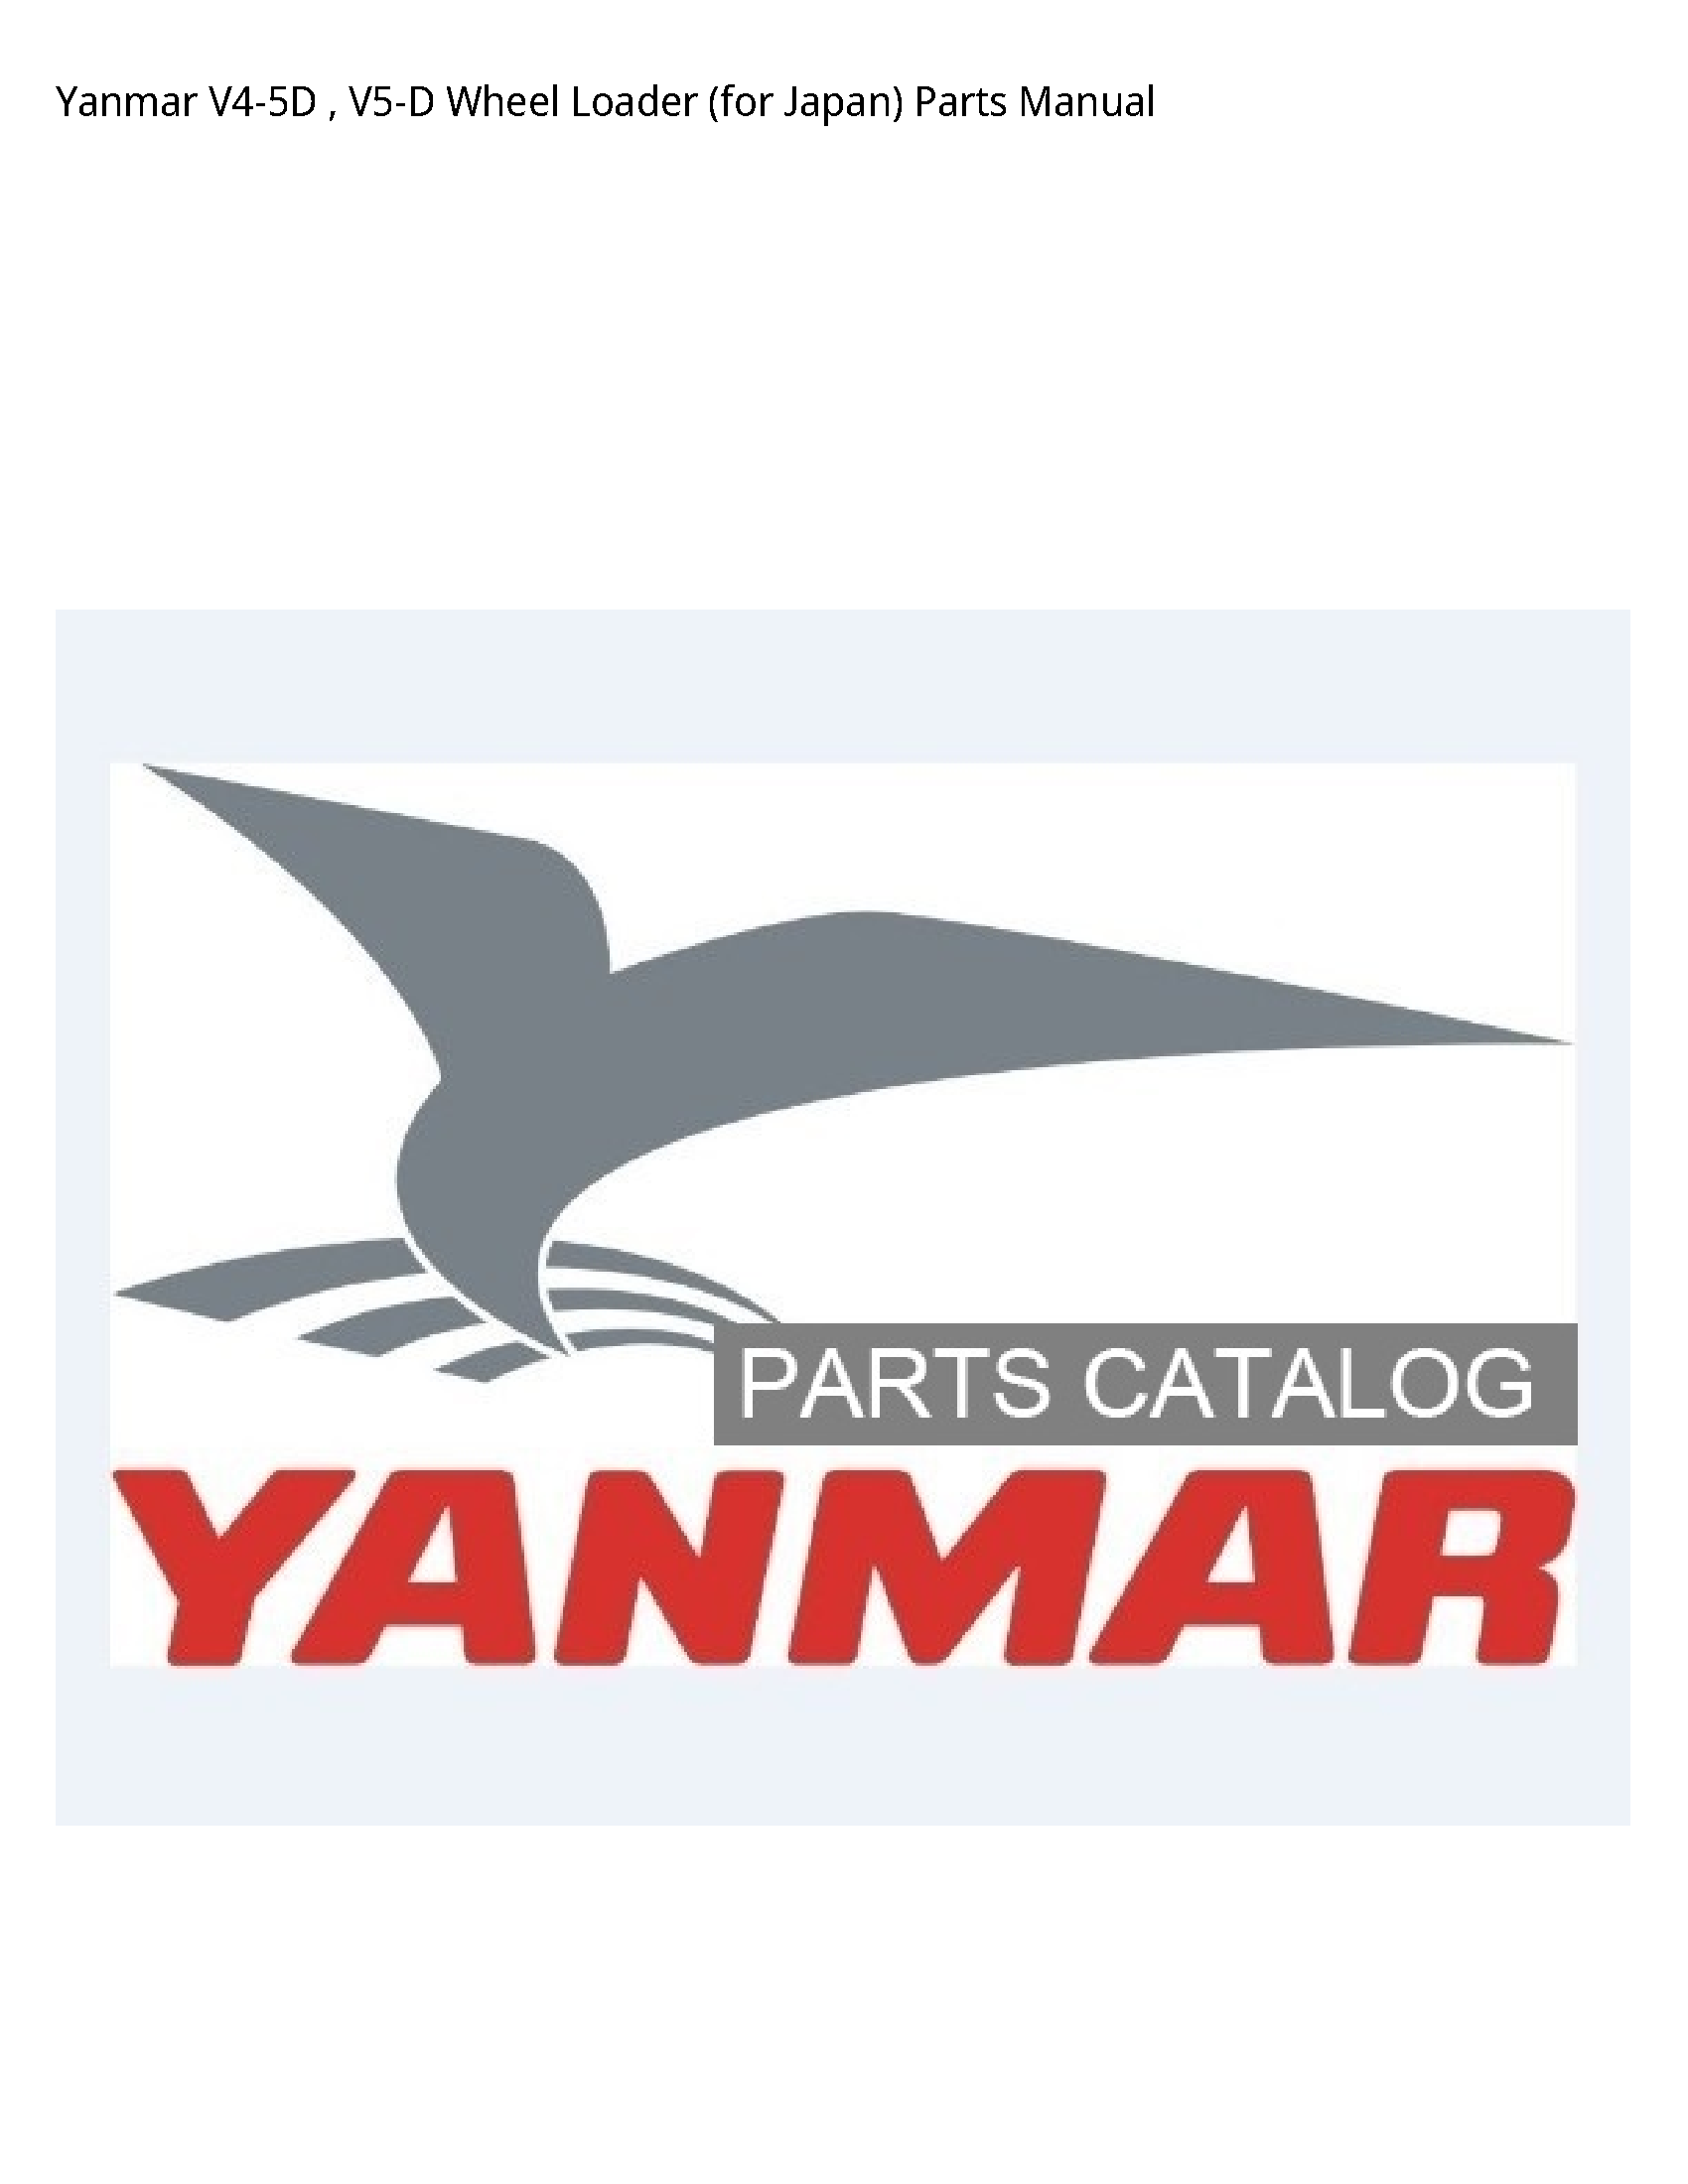 Yanmar V4-5D Wheel Loader (for Japan) Parts manual